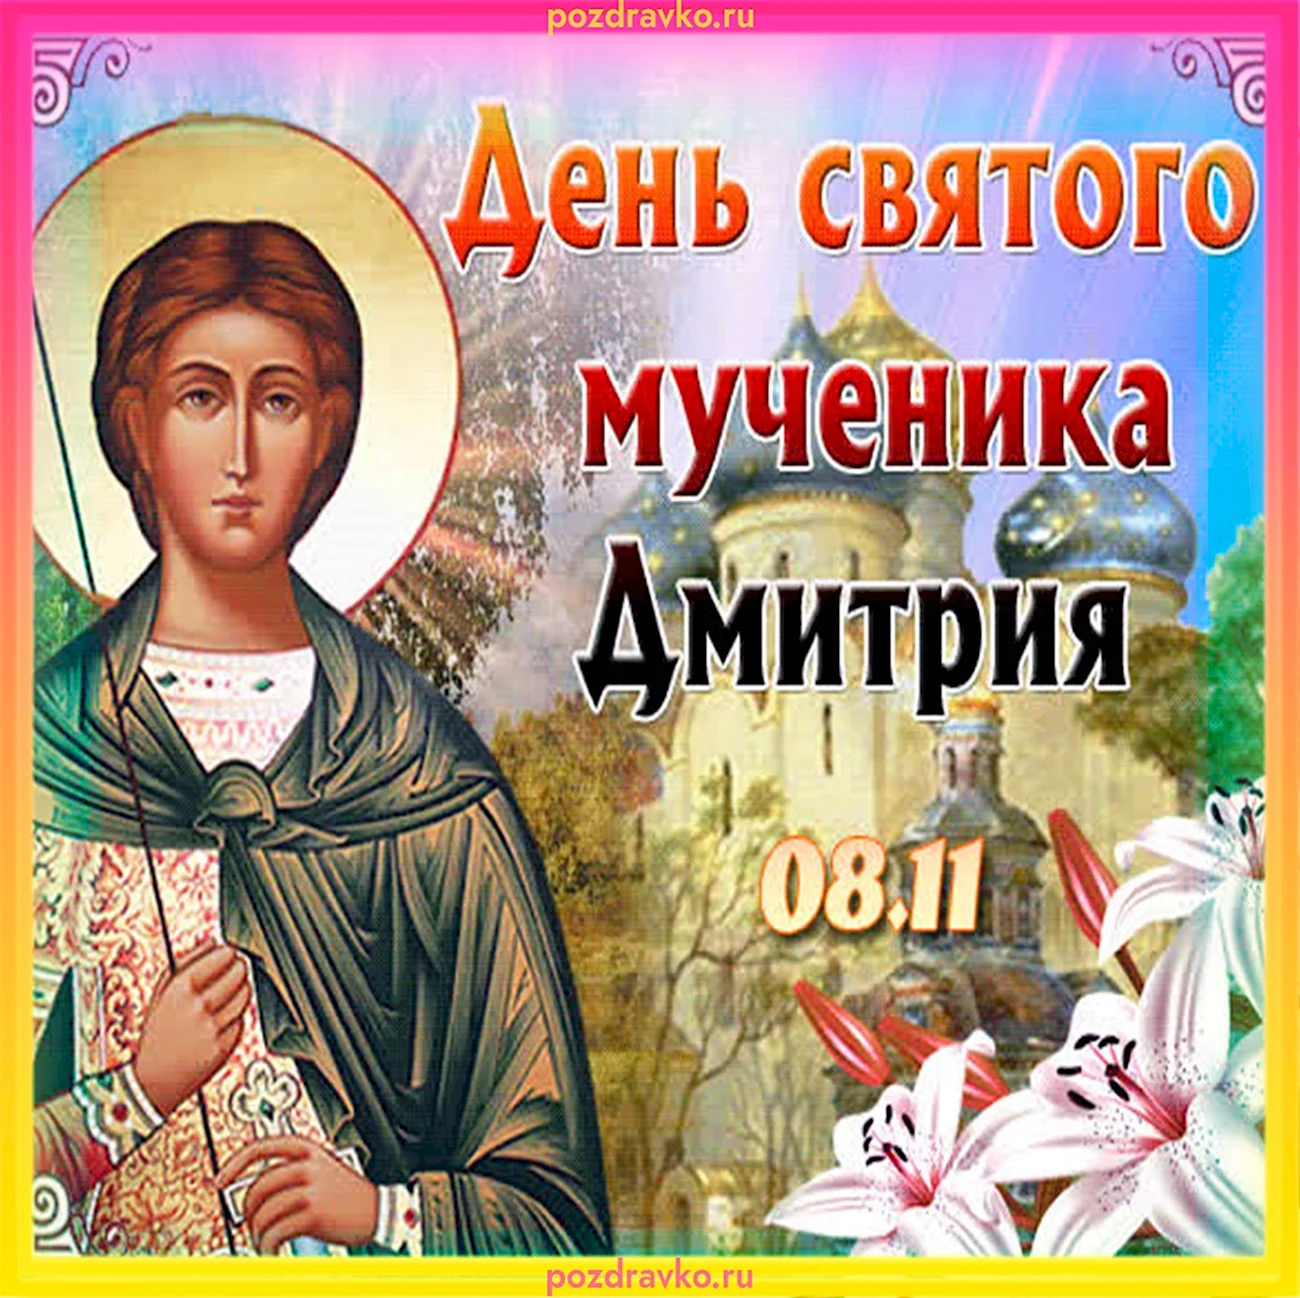 8 Ноября день ангела Дмитрия. Картинка